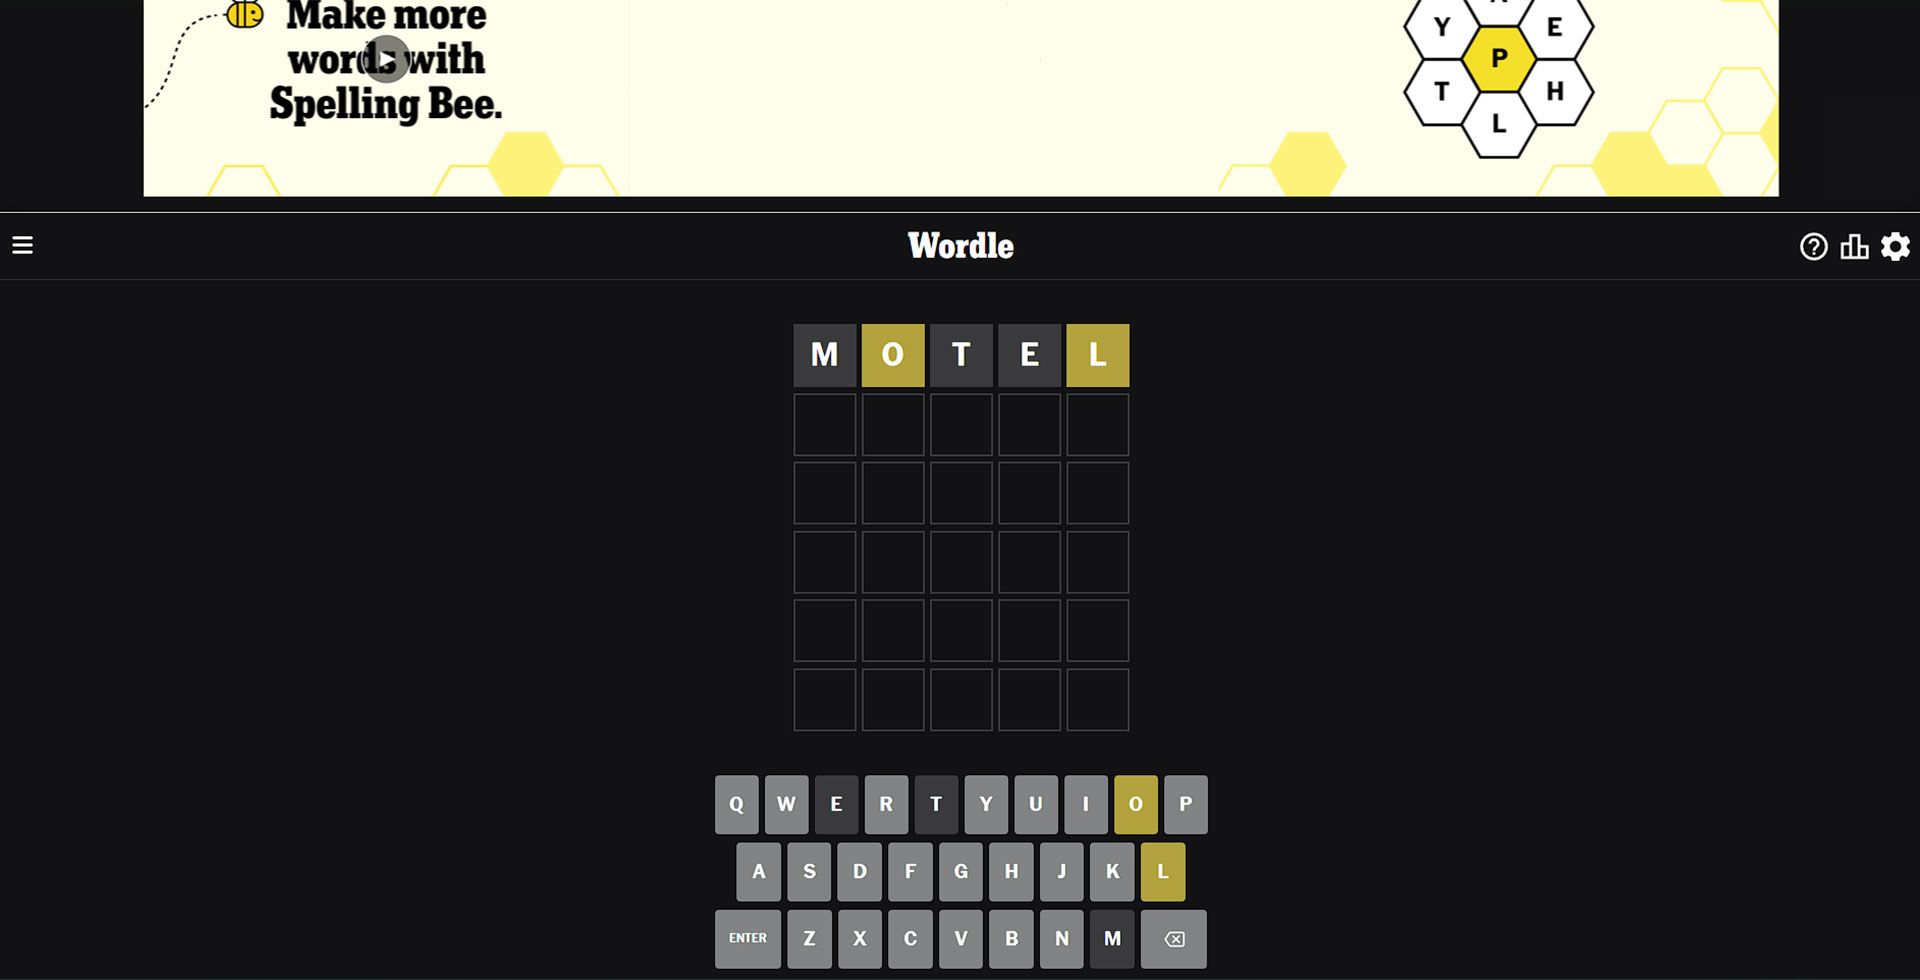 صفحه اصلی سایت Wordle که کیبورد کلمات و باکس خالی را نشان میدهد